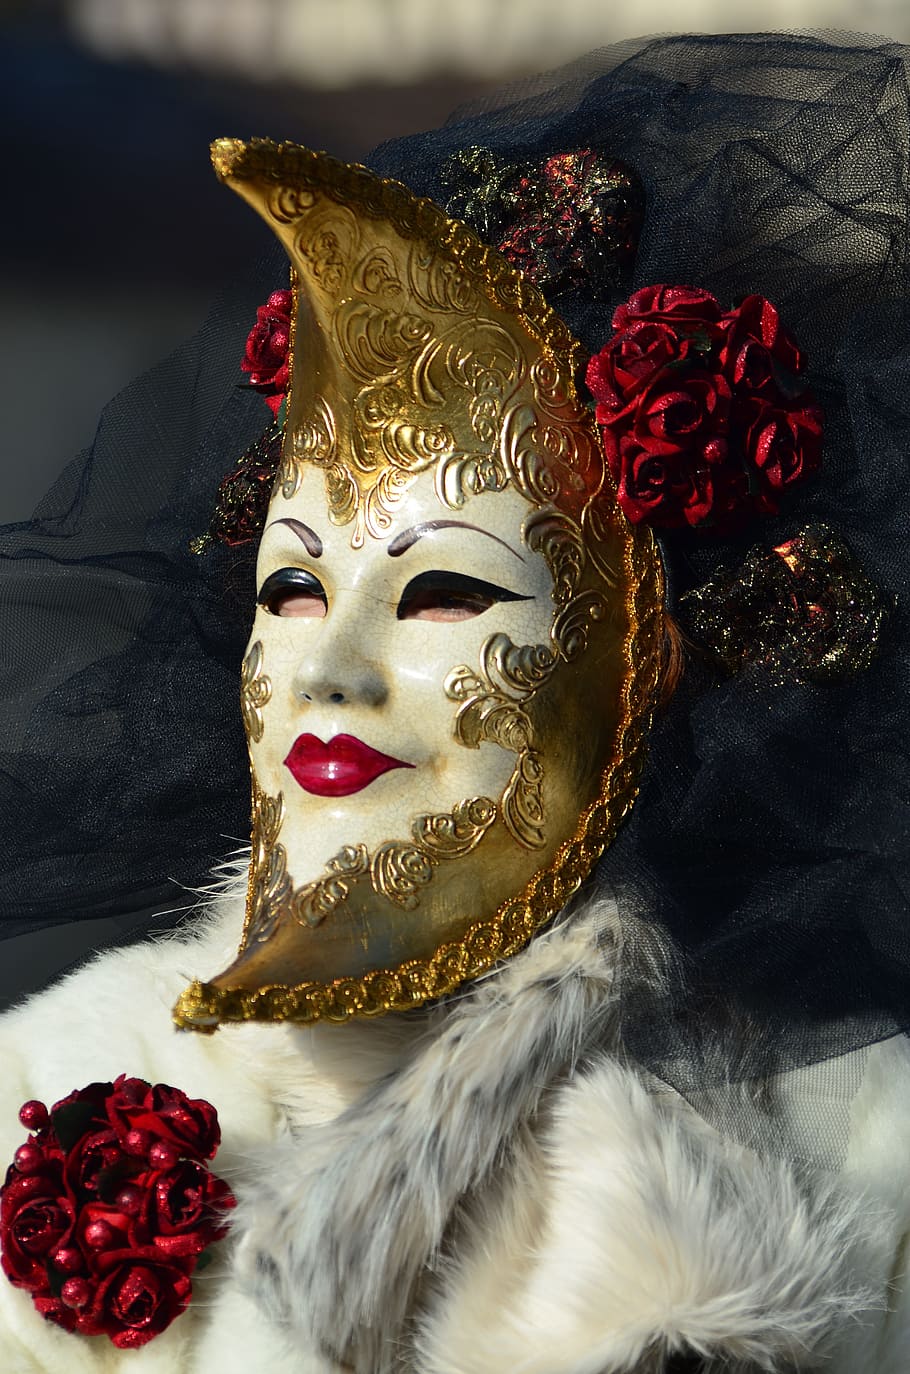 人, 身に着けている, 半月仮面舞踏会マスク, カーニバル, ヴェネツィア, ハリアベネチア, マスク, コスチューム, 装飾された, フィギュア